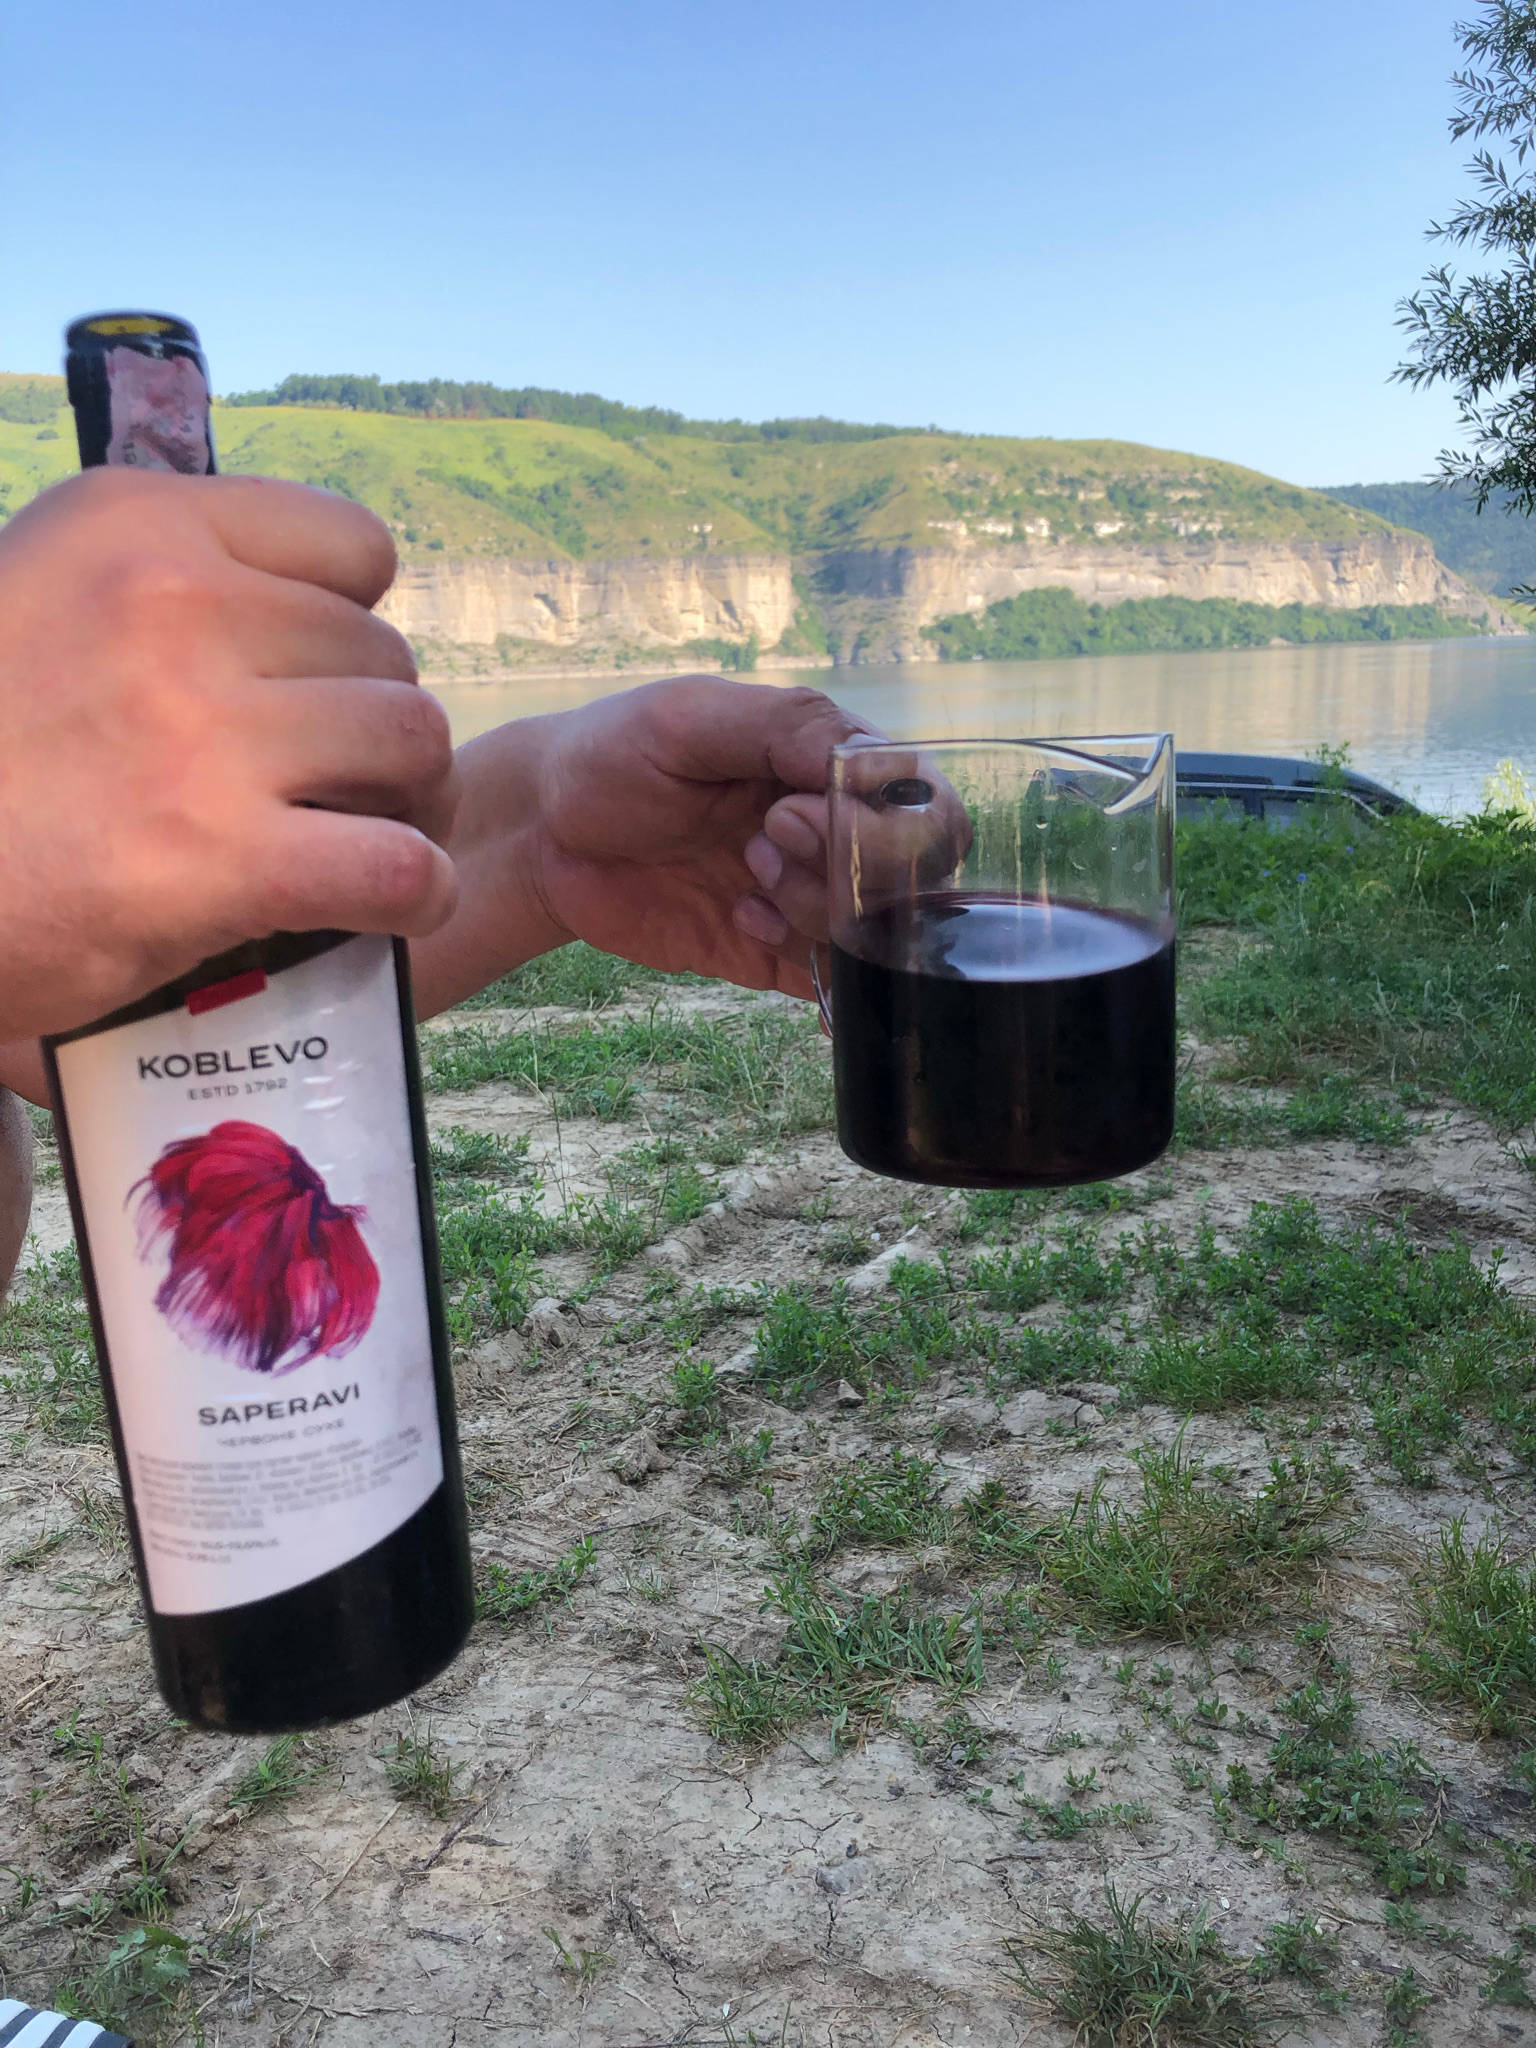 Moldawischer Wein beim Campen in der Ukraine